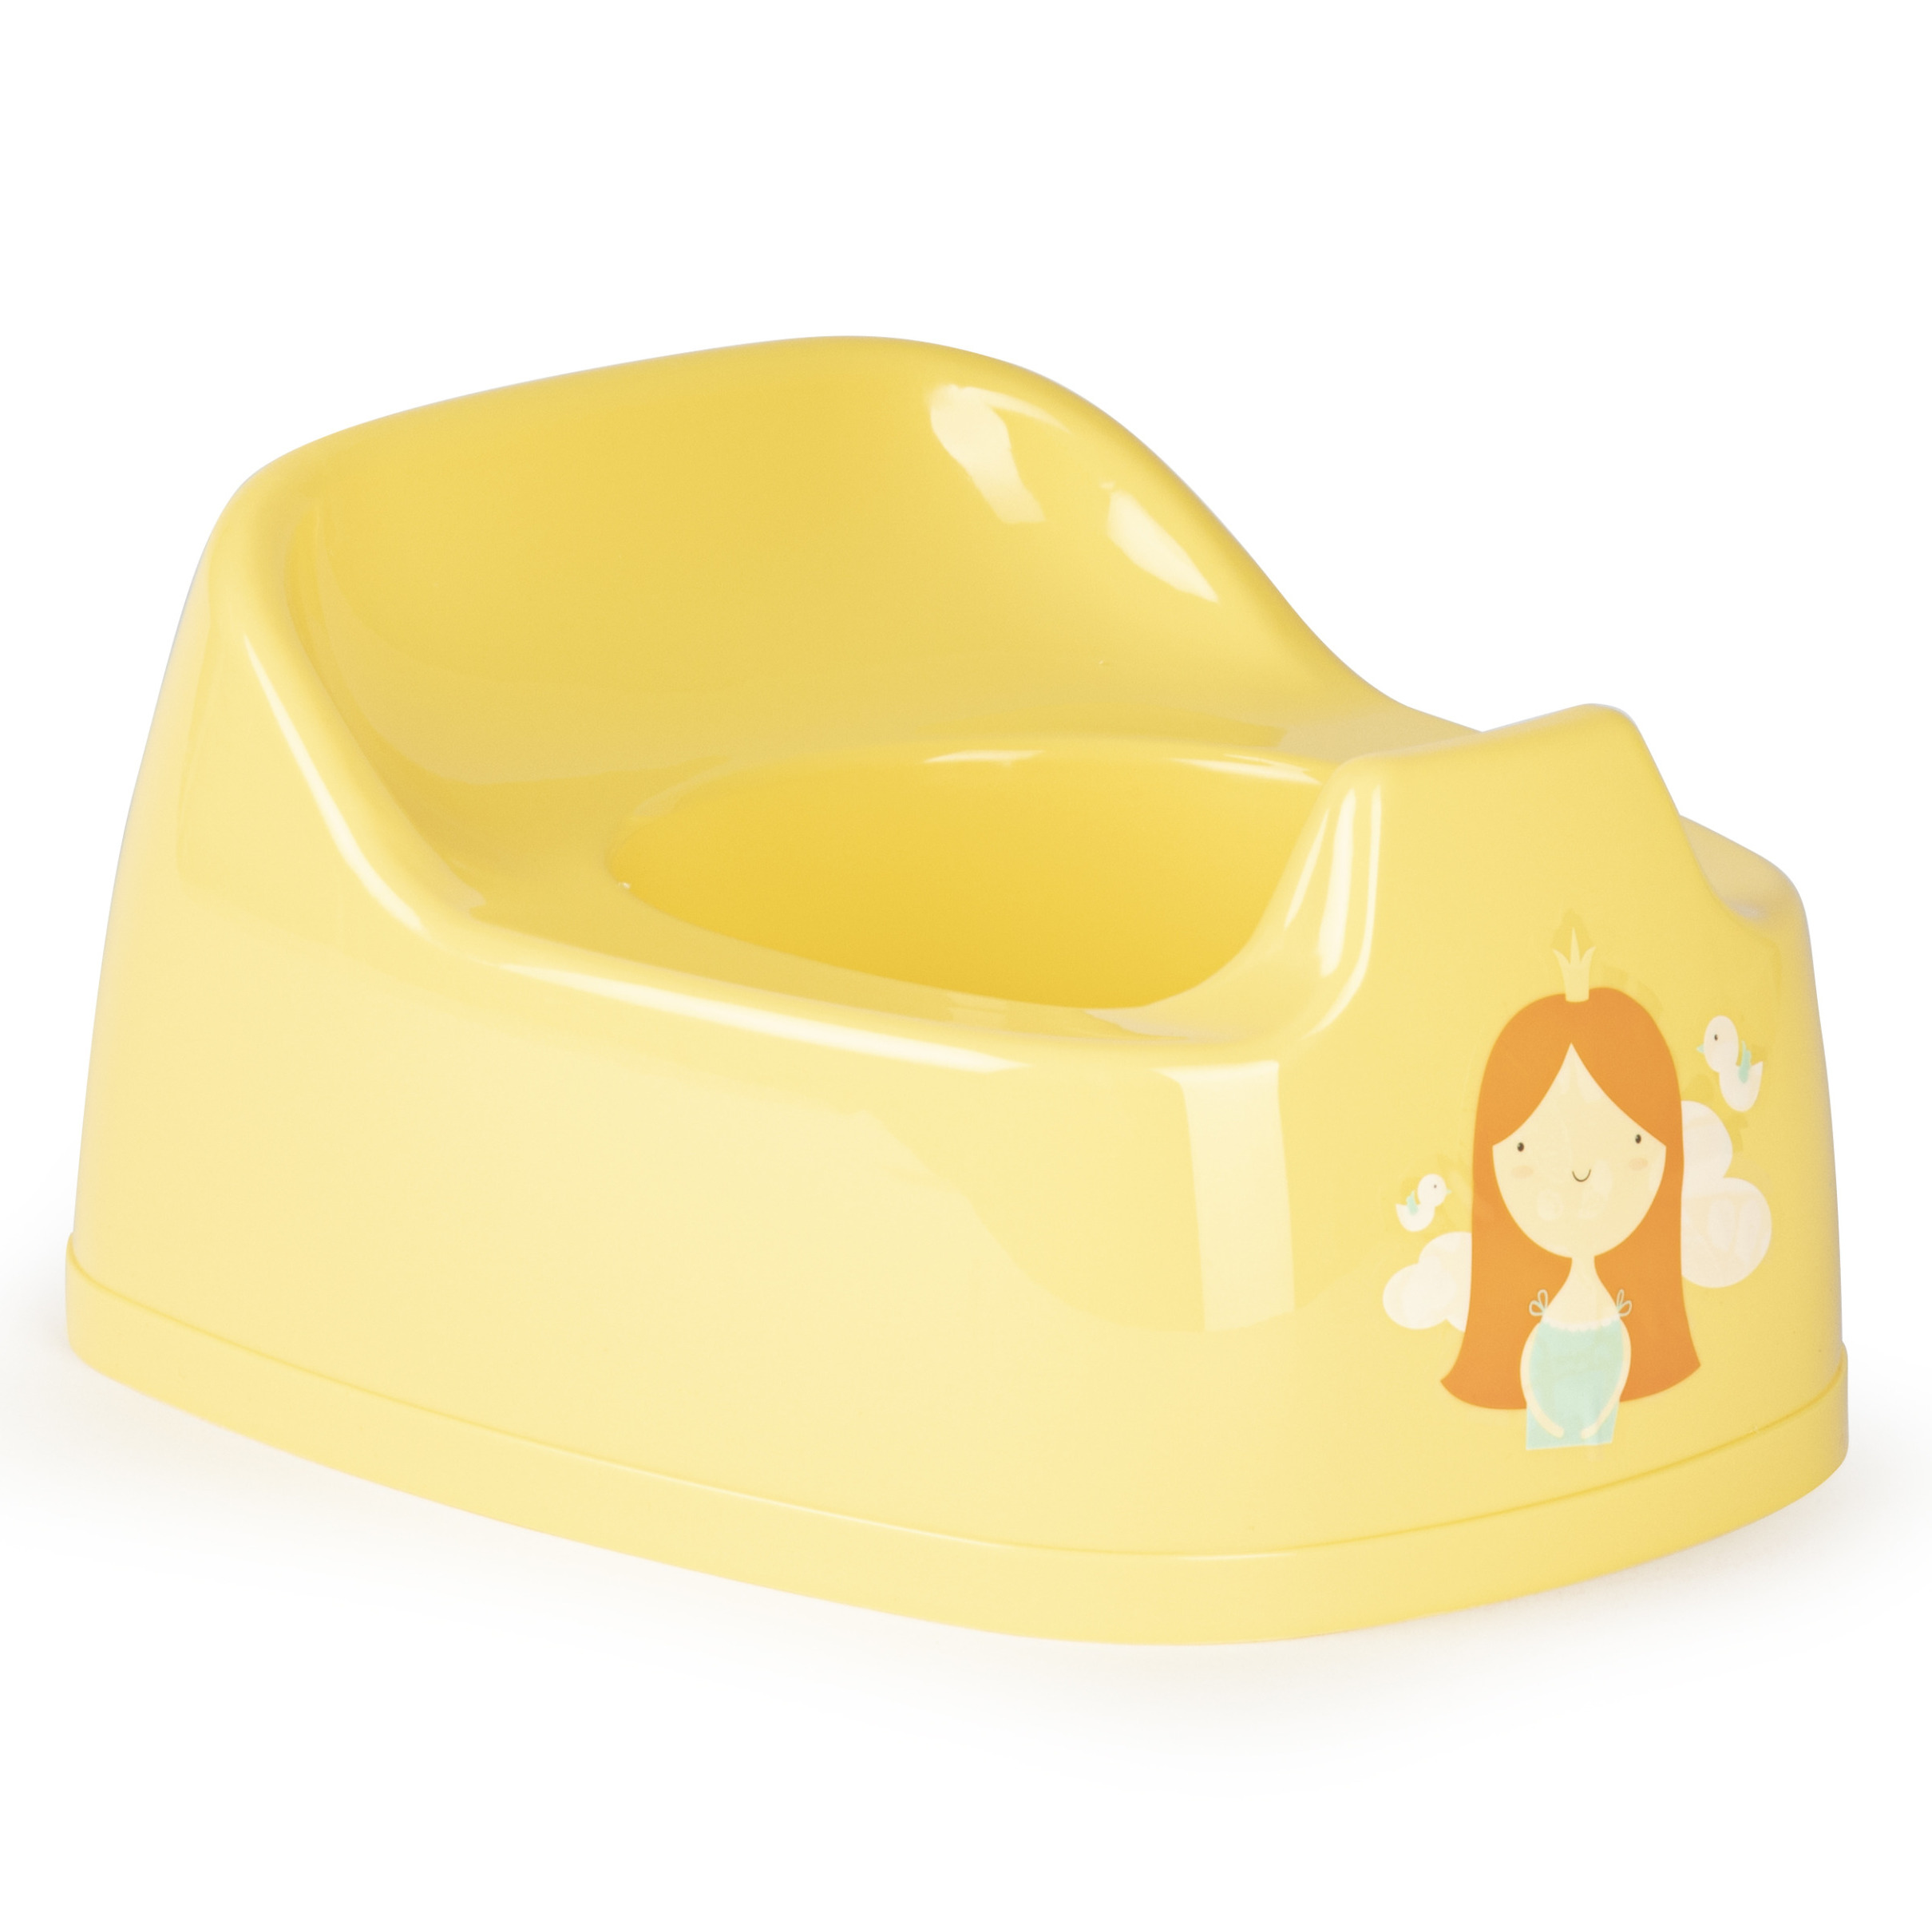 Baby-peuter plaspotje-wc potje geel met willekeurige afbeelding op sticker 27 cm